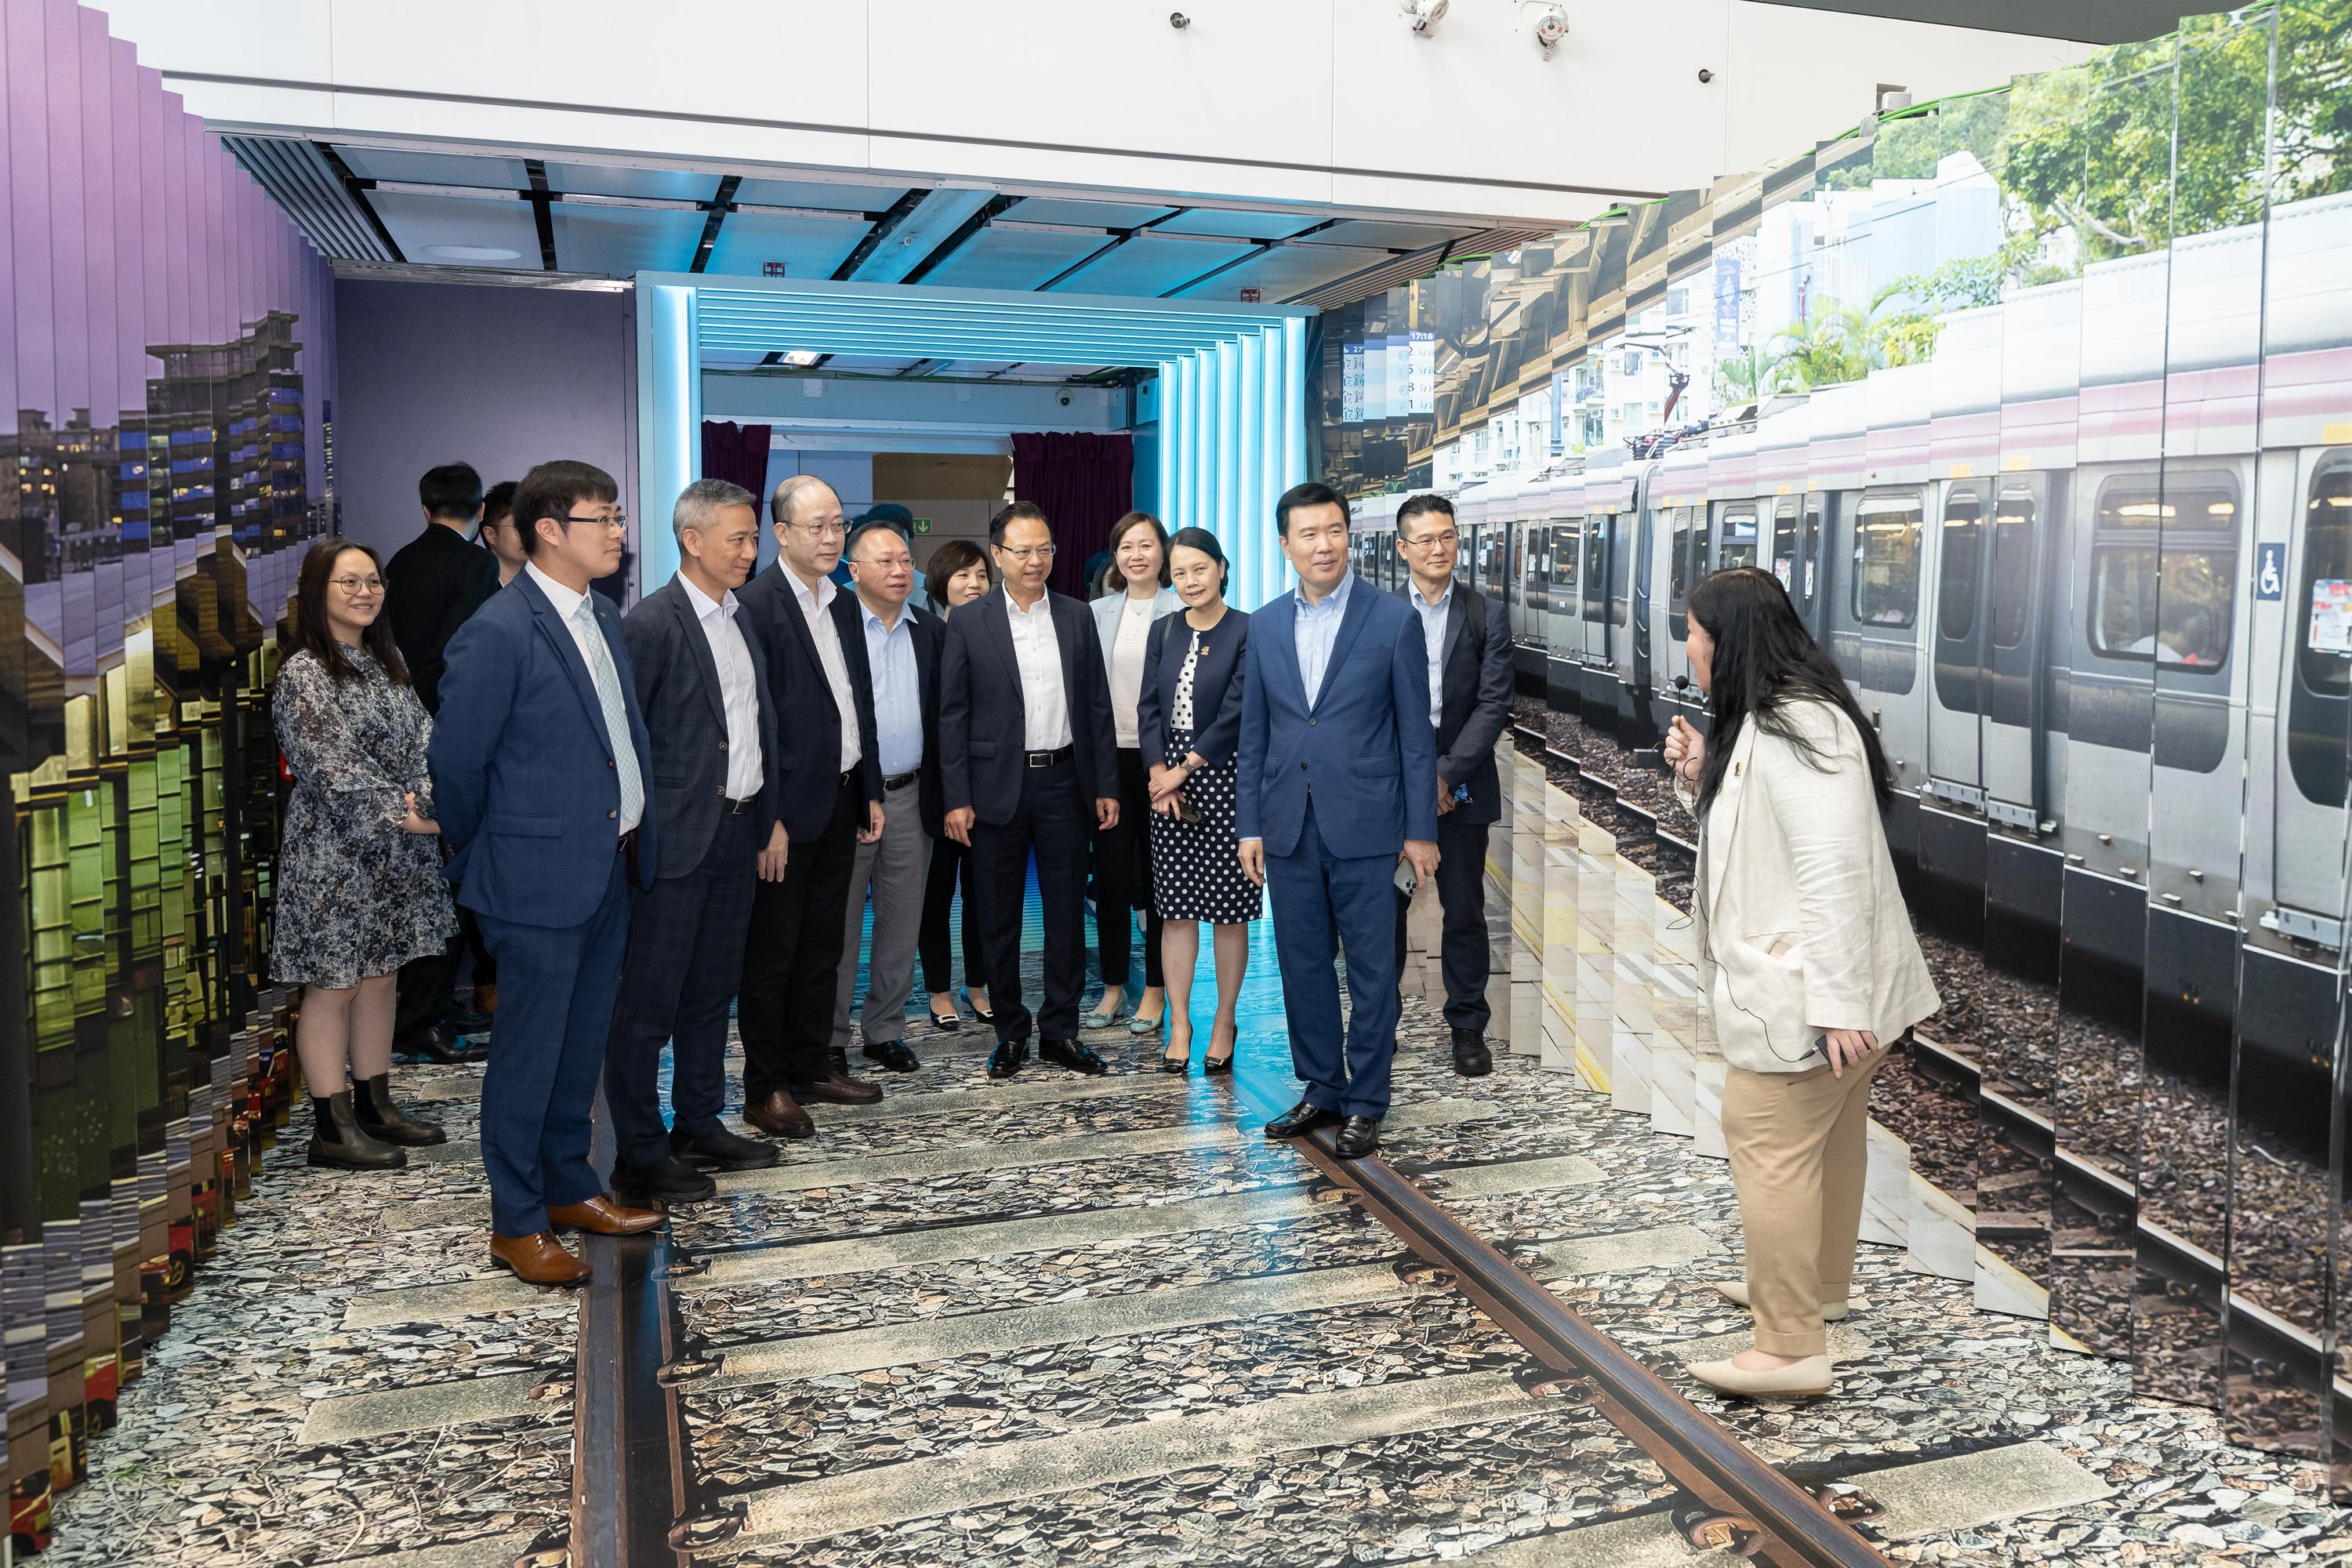 立法會交通事務委員會今日（四月二十四日）到紅磡站參觀香港鐵路有限公司的「站見」鐵路展，以加深了解香港鐡路服務的發展進程。